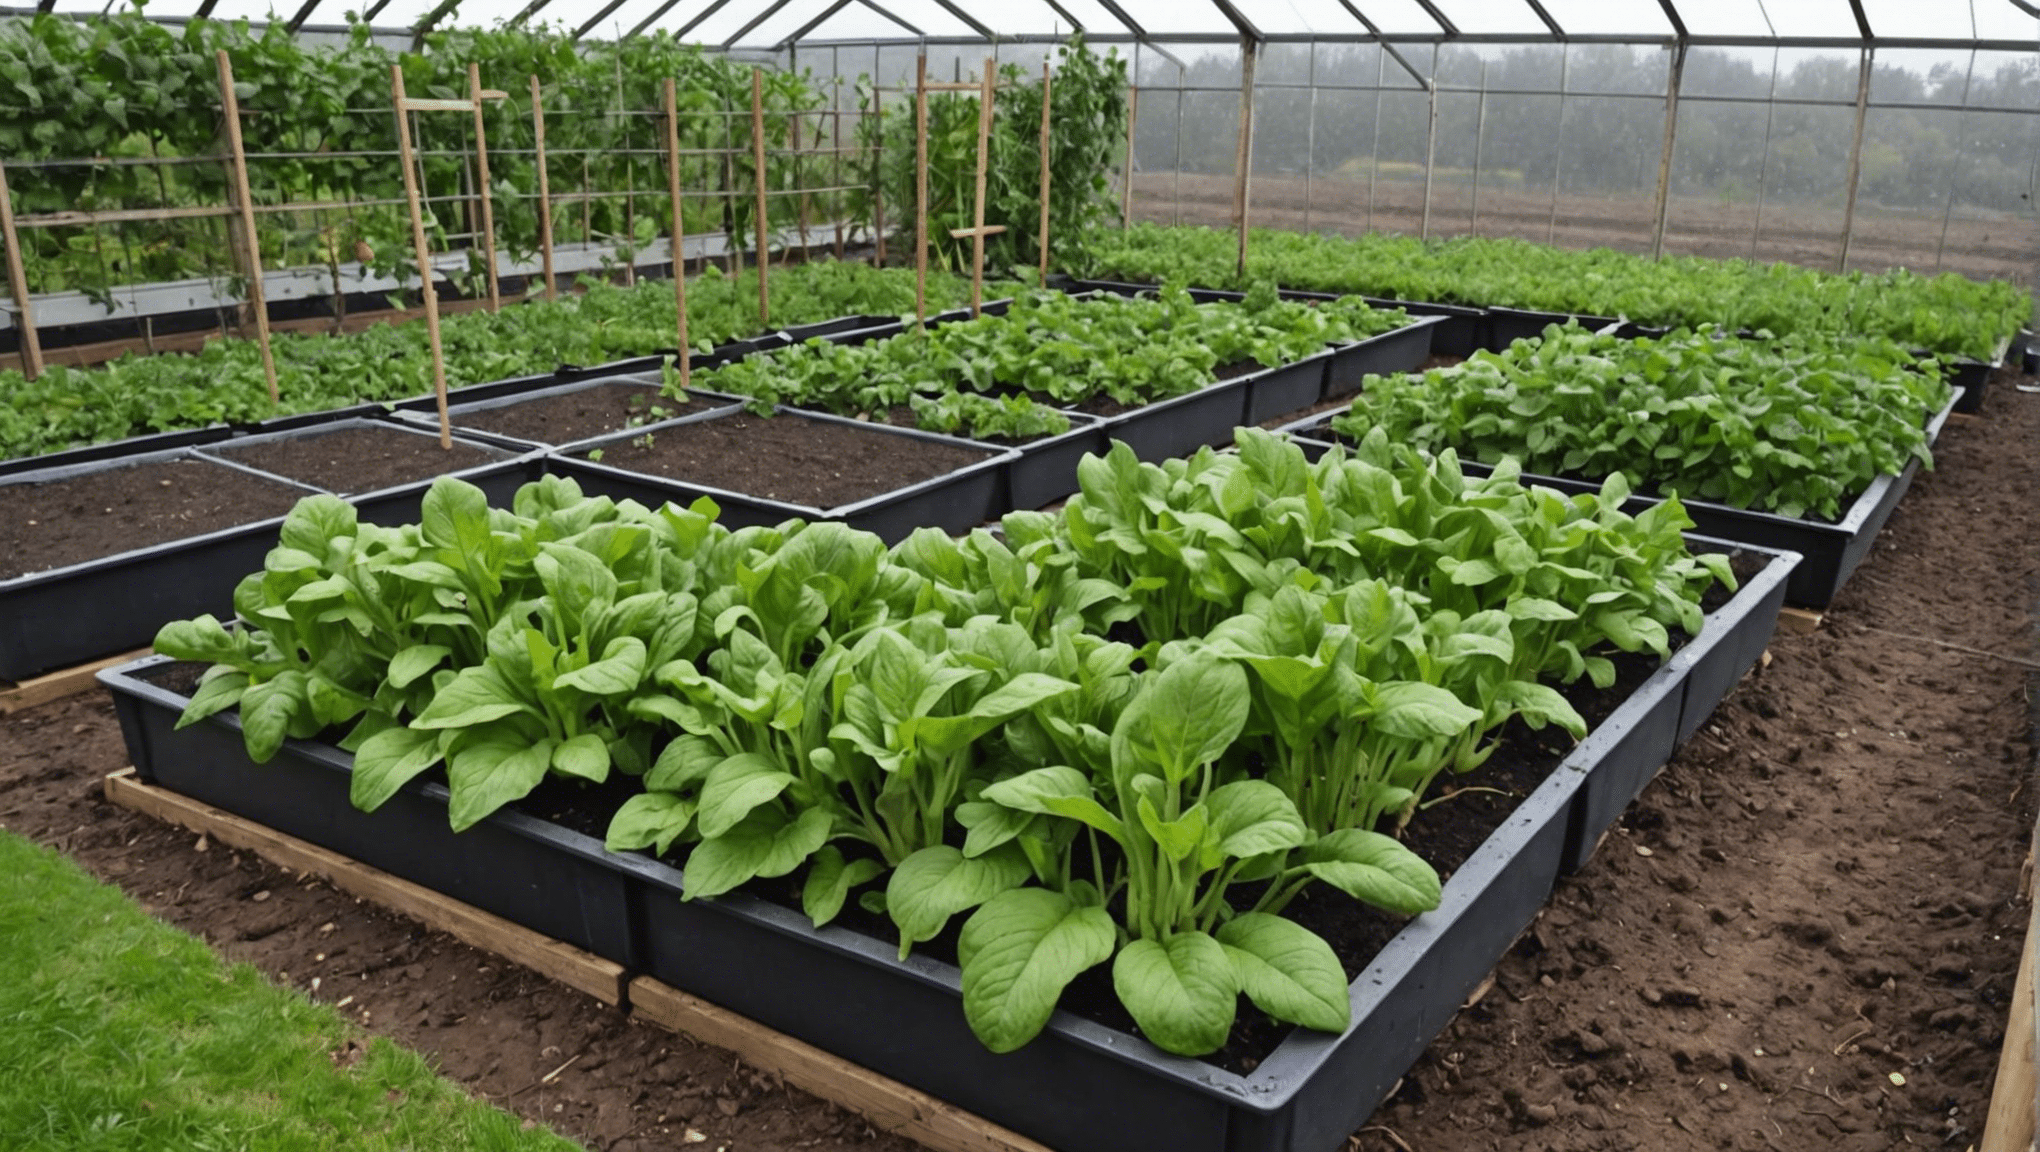 découvrez des astuces pratiques pour sauver votre potager après une période de pluie intense. conseils et techniques pour remettre votre jardin sur pied.